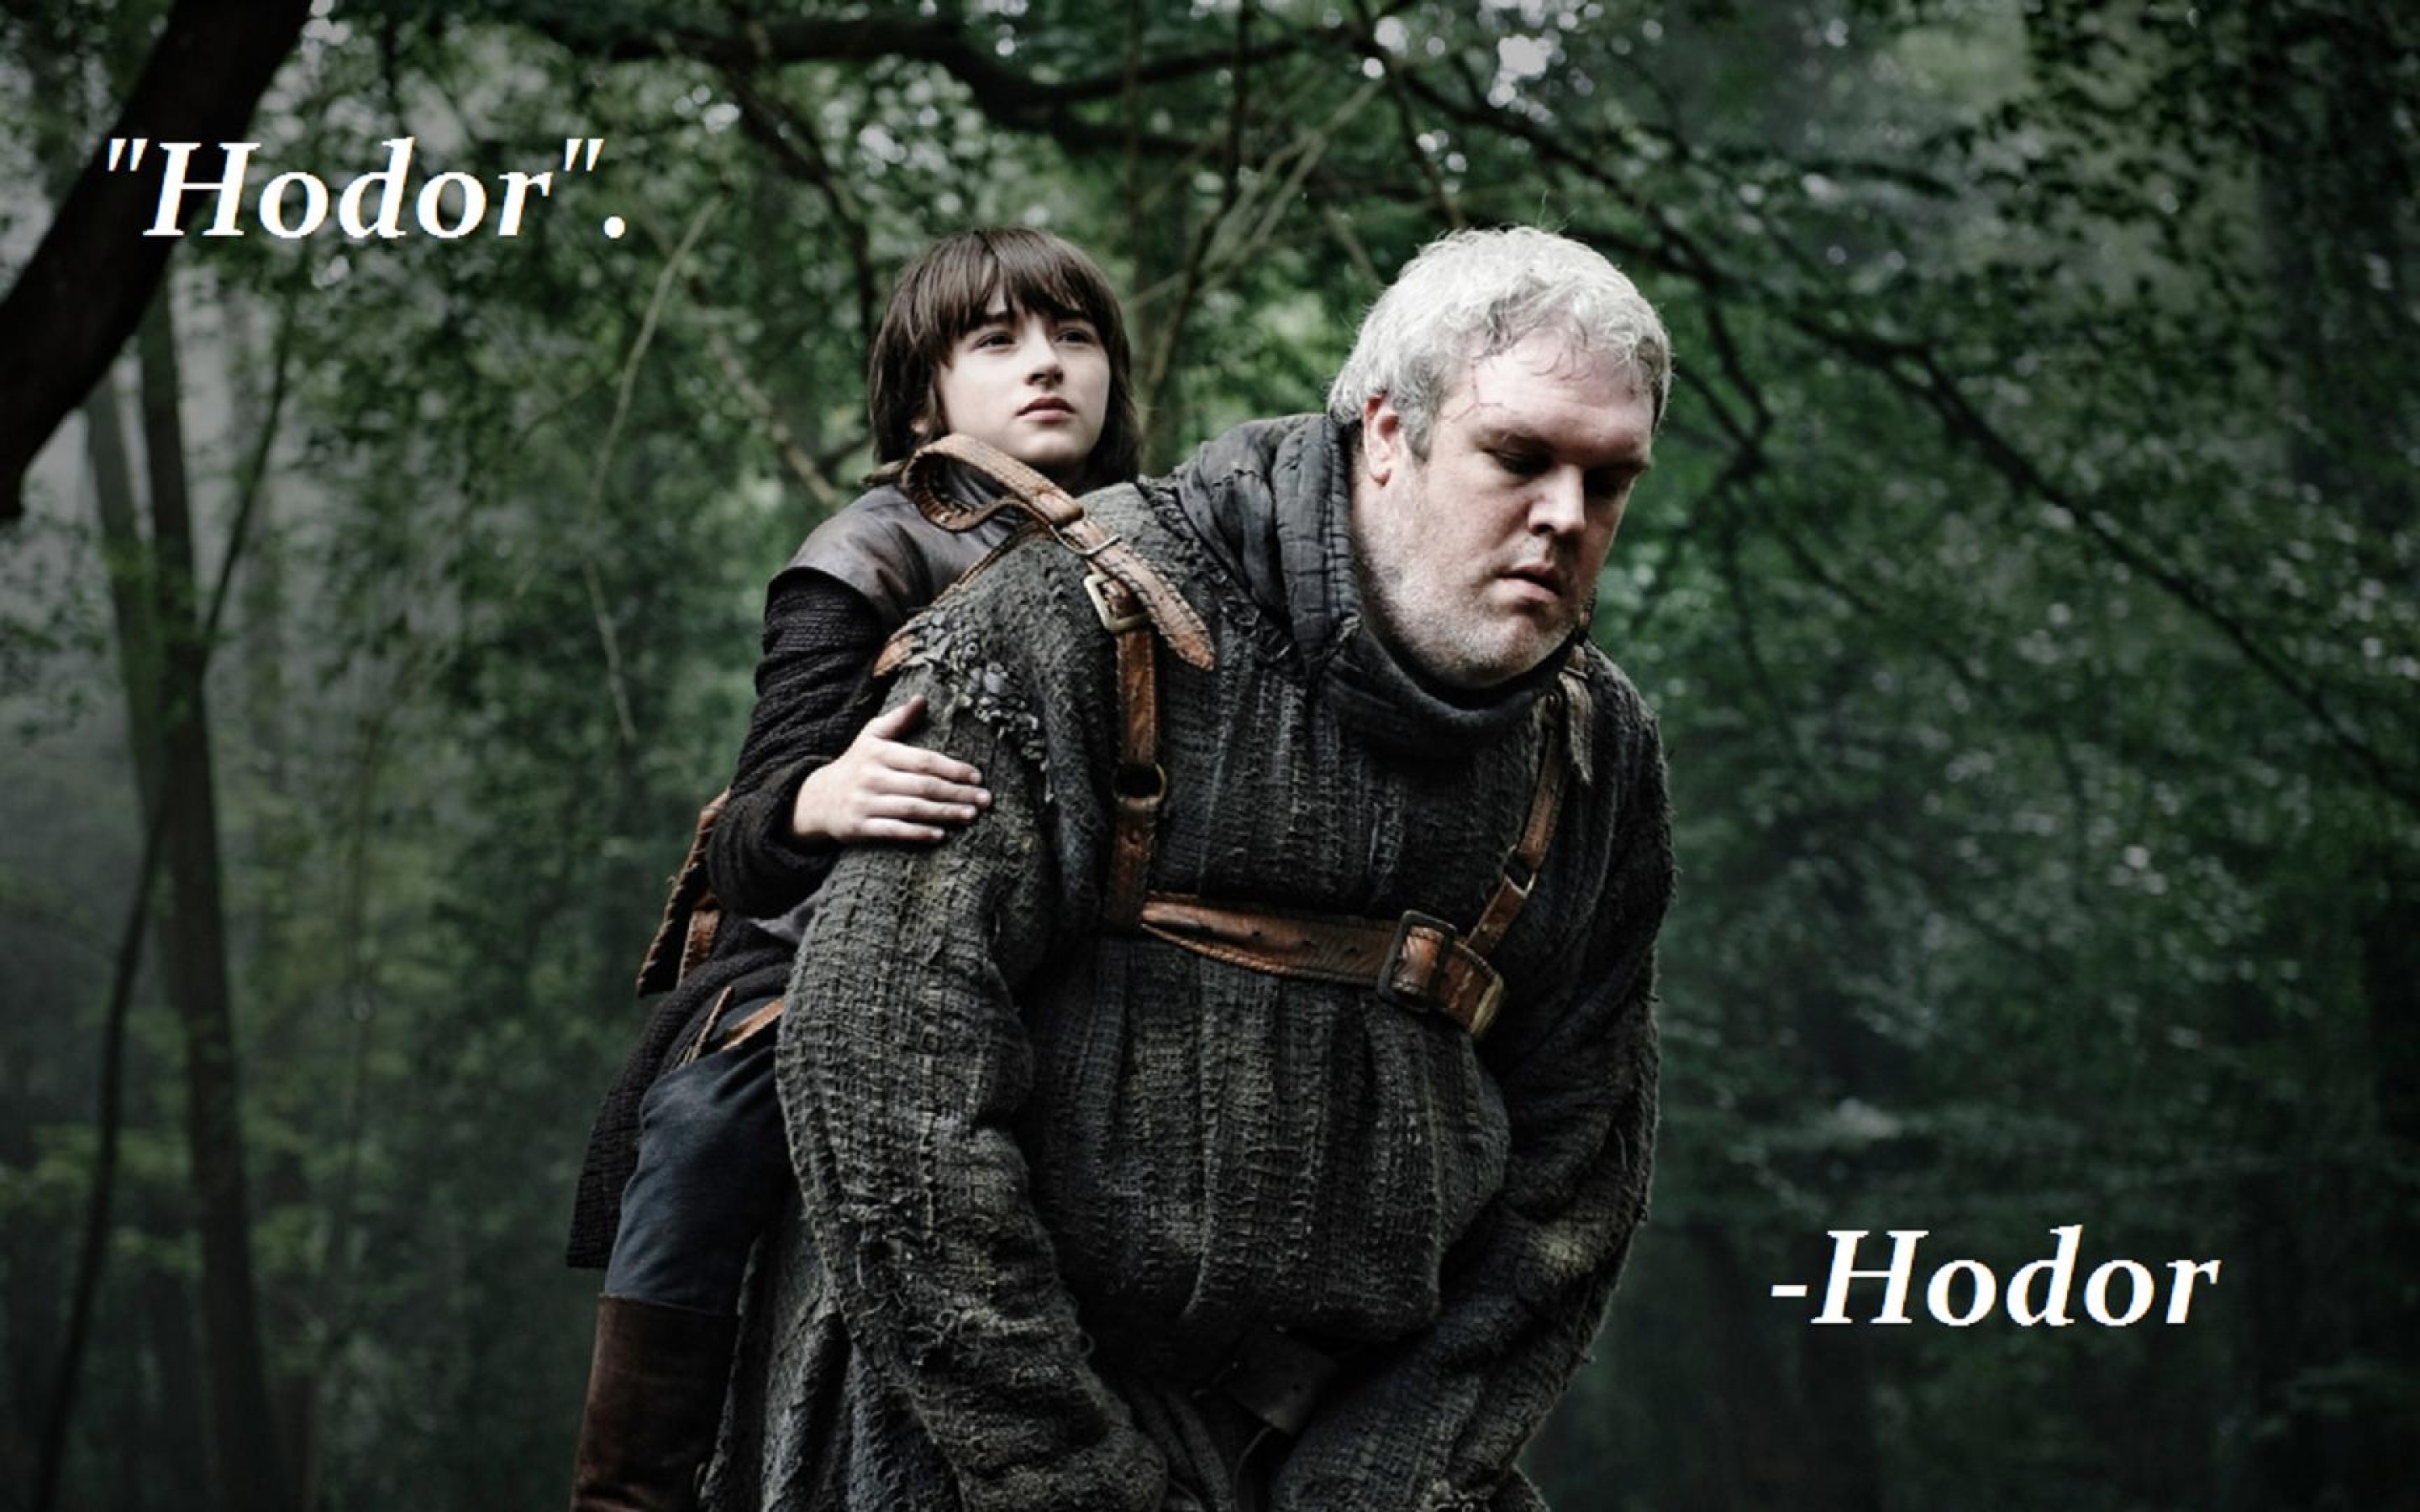 Game of Thrones: Hodor HD Wallpaper